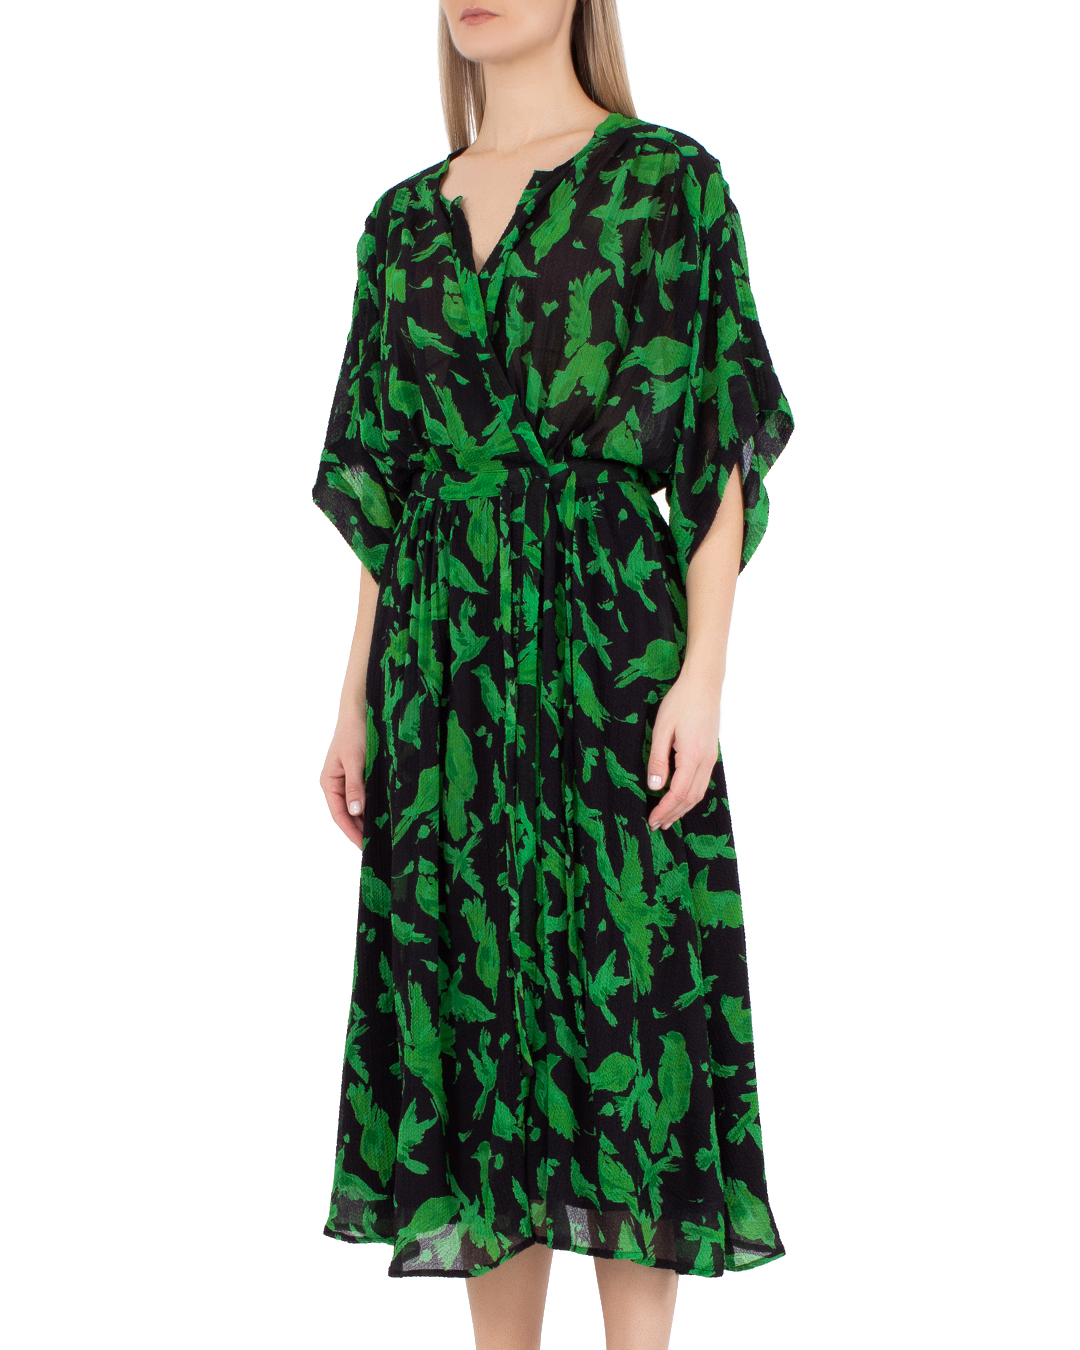 платье Essentiel EVRAY черный+зеленый m, размер m, цвет черный+зеленый EVRAY черный+зеленый m - фото 3